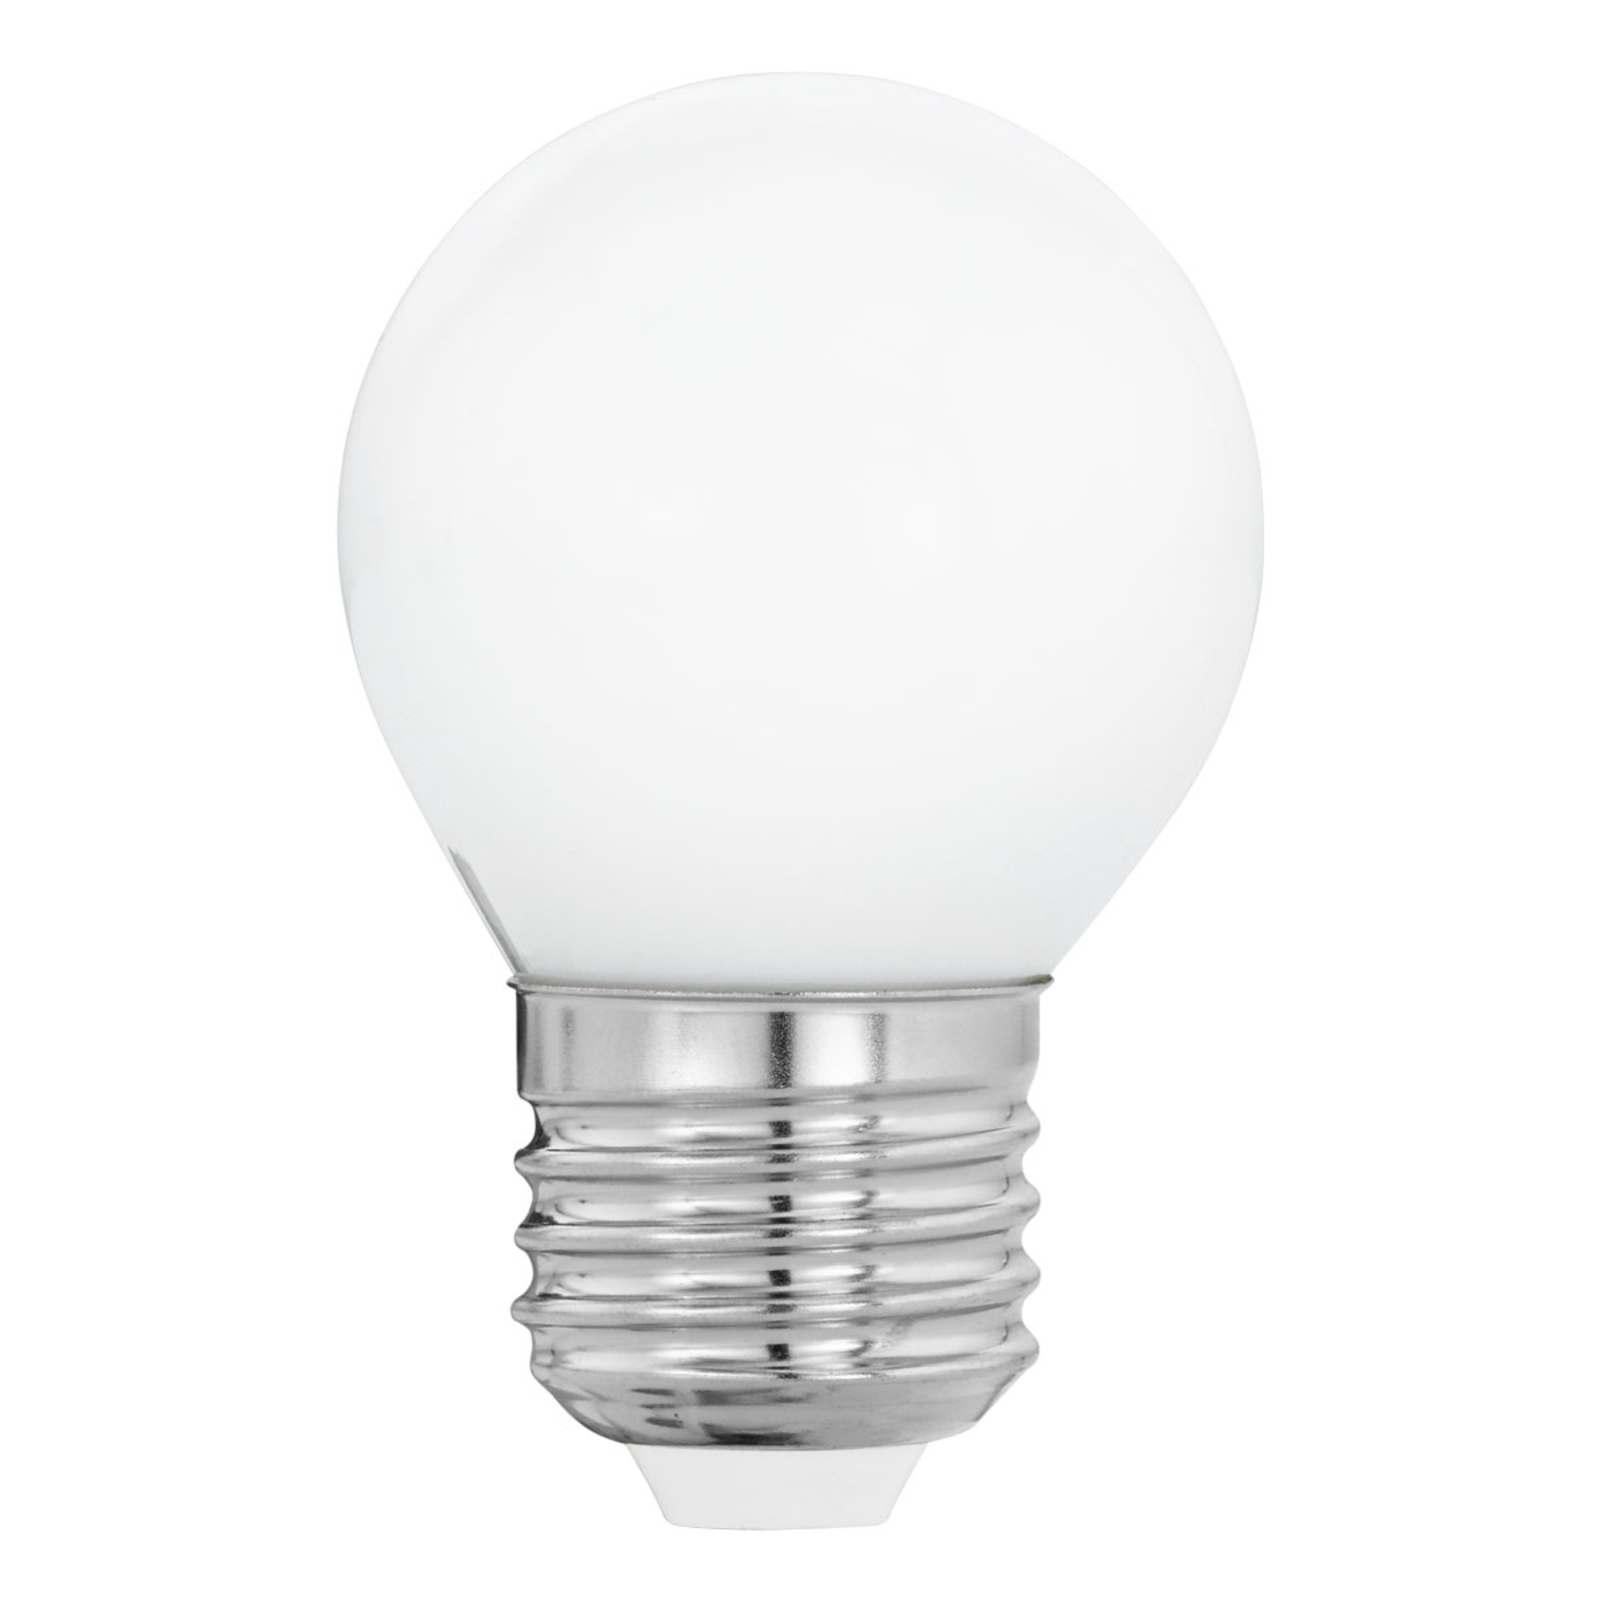 Lampadina LED E27 G45 4W, bianco caldo, opale